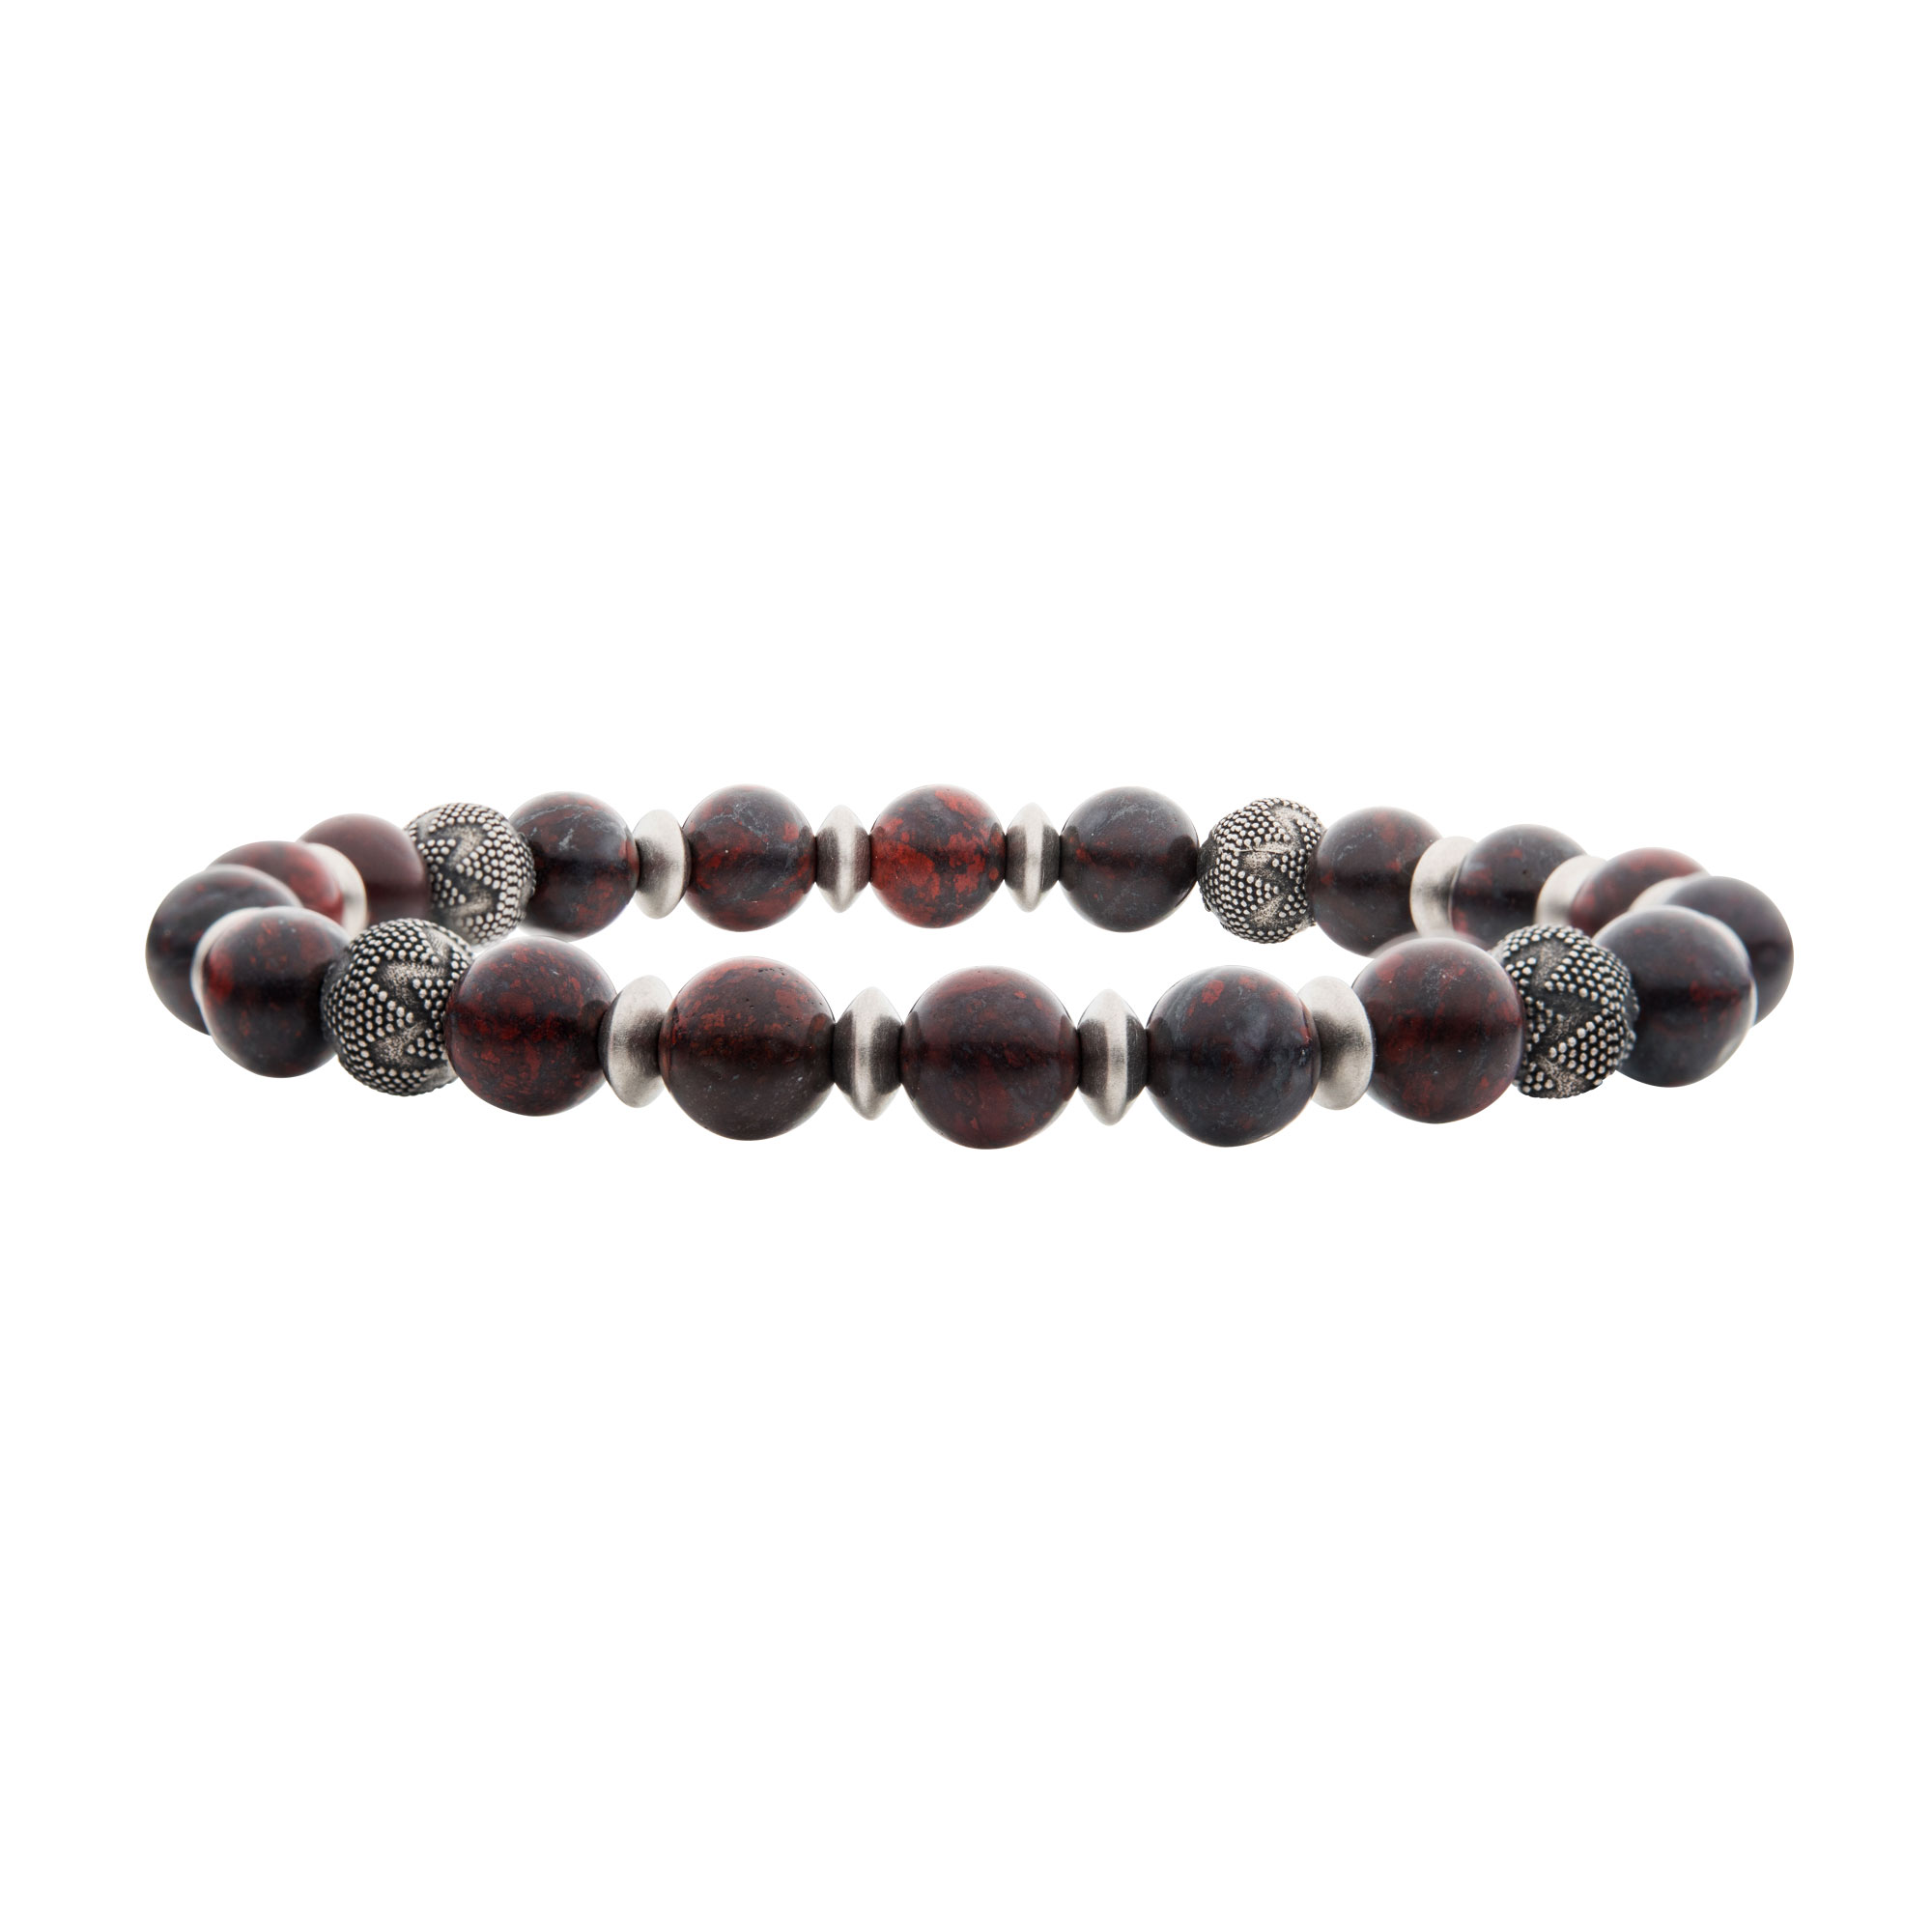 Leopard Stones with Black Oxidized Beads Bracelet Glatz Jewelry Aliquippa, PA